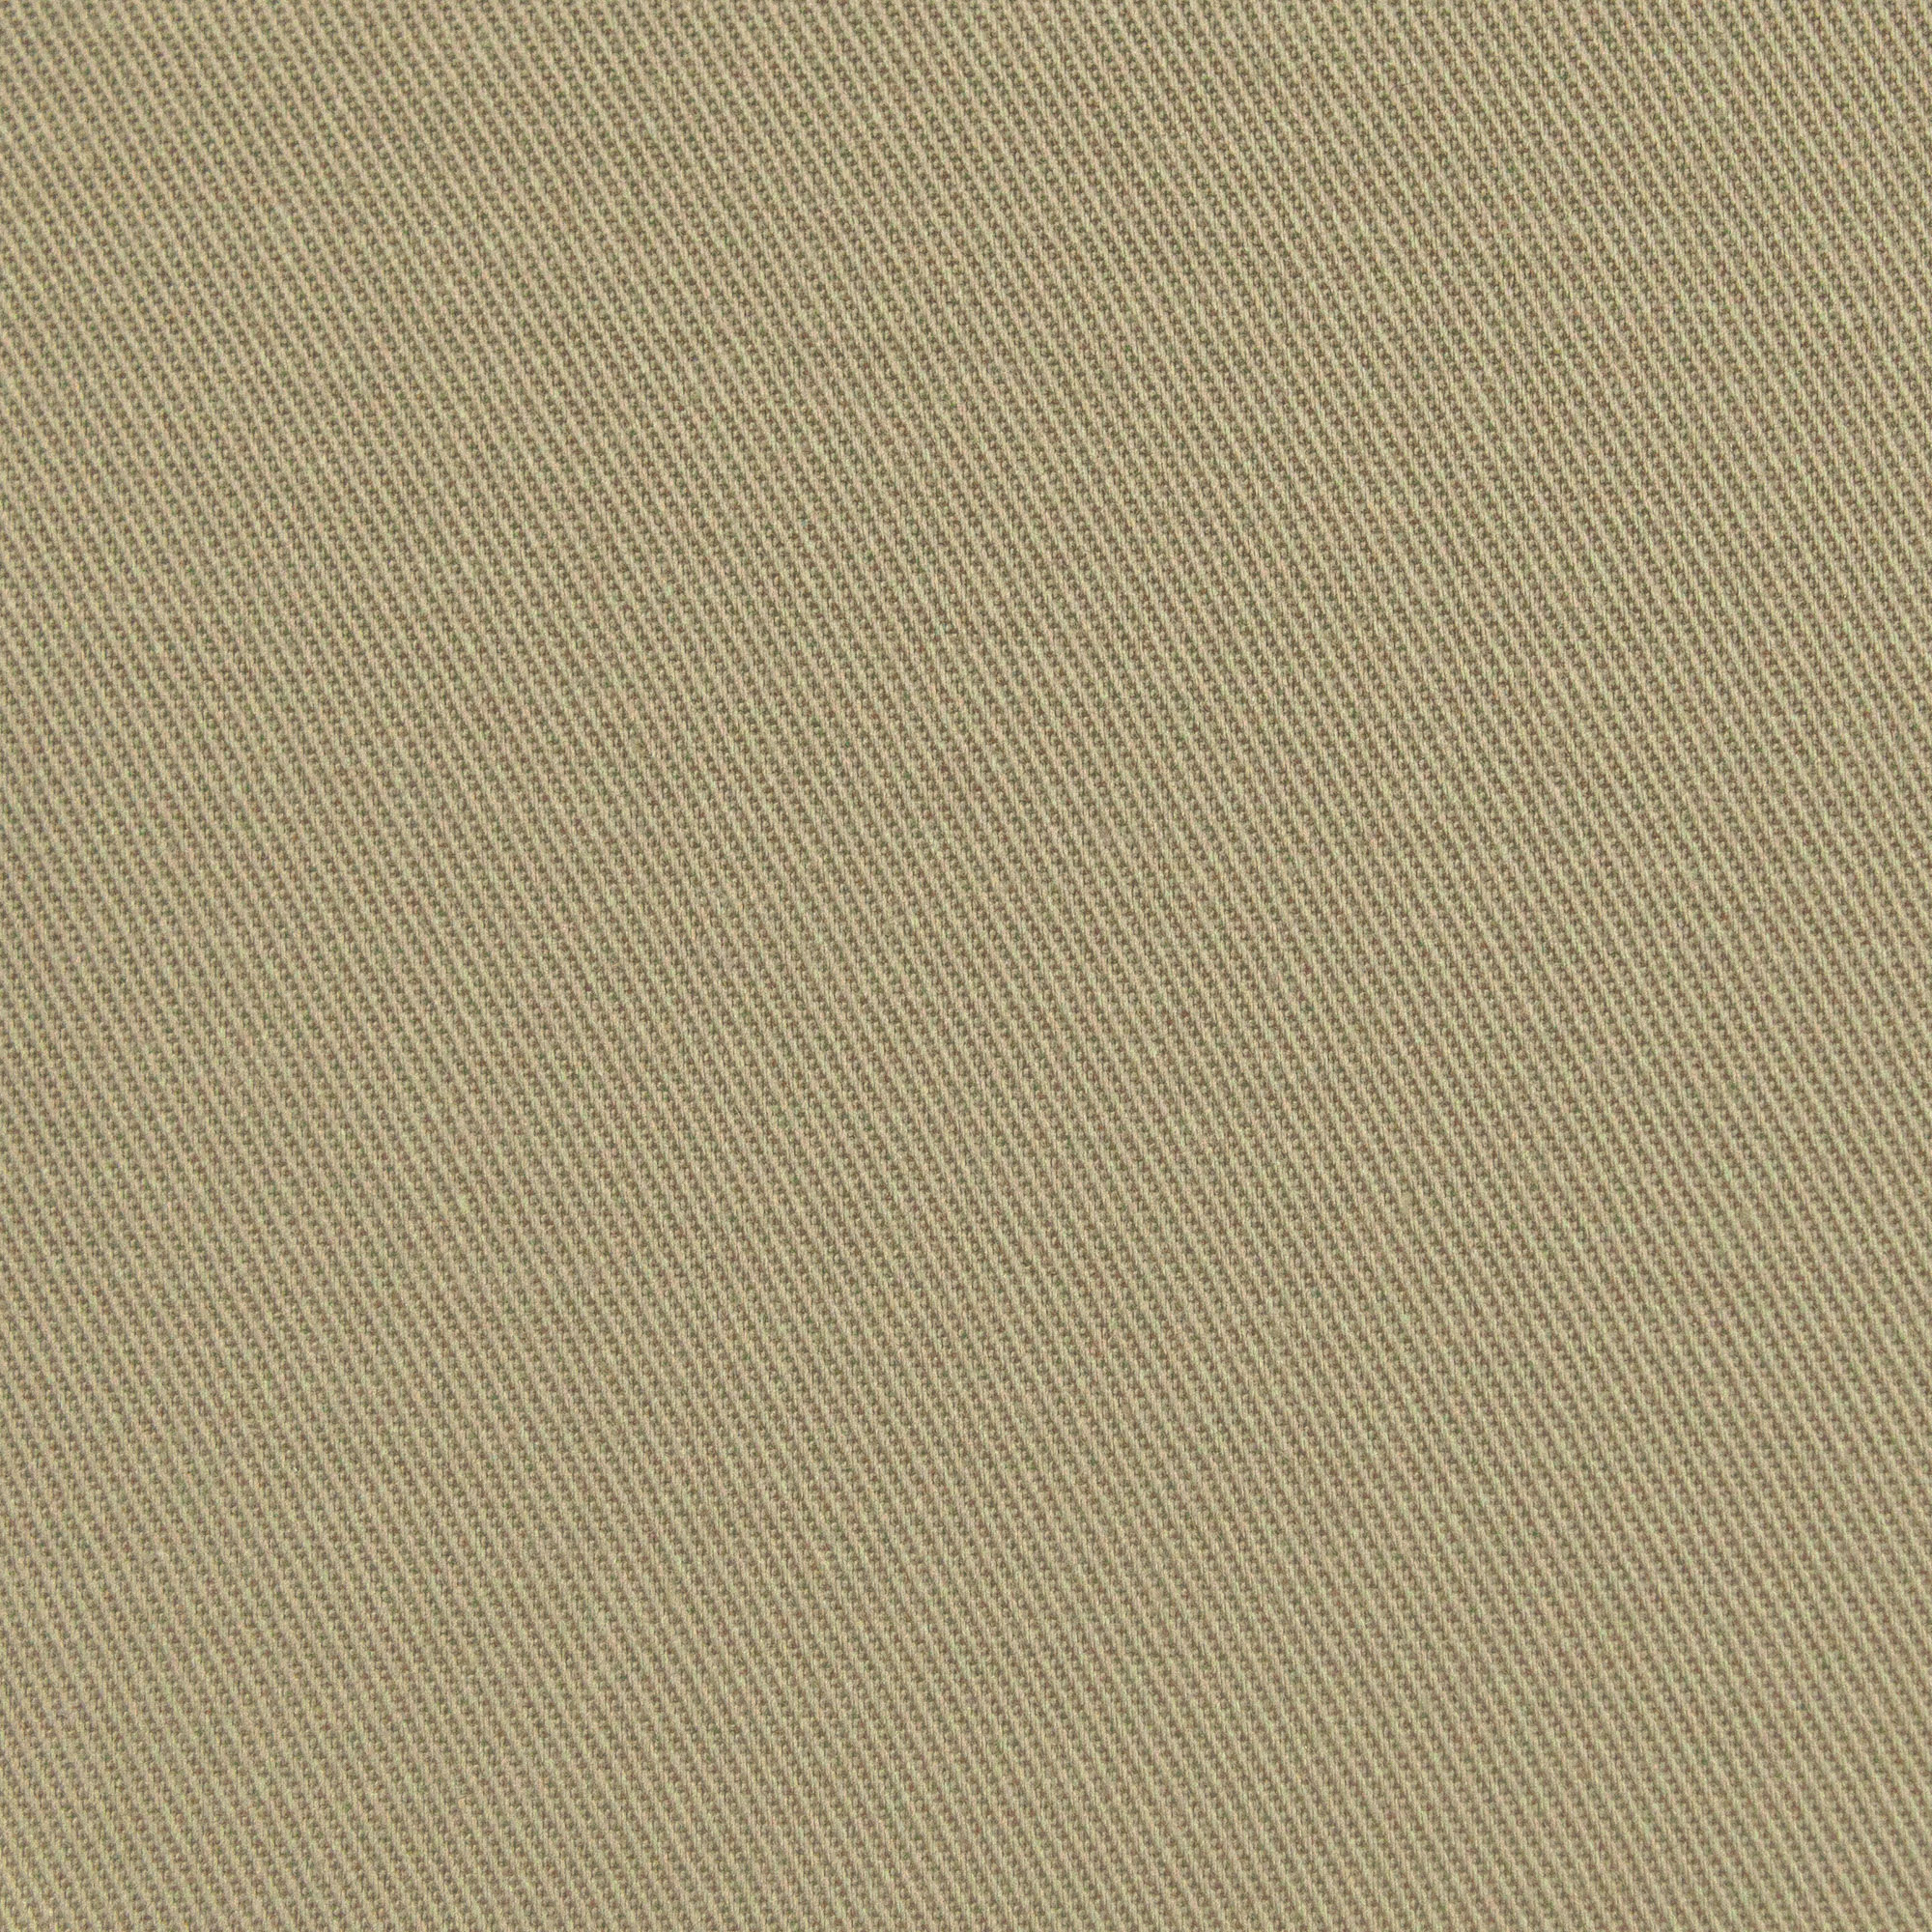 Rasch Denzo Linen Plain Texture Cream/Beige Wallpaper - 448641